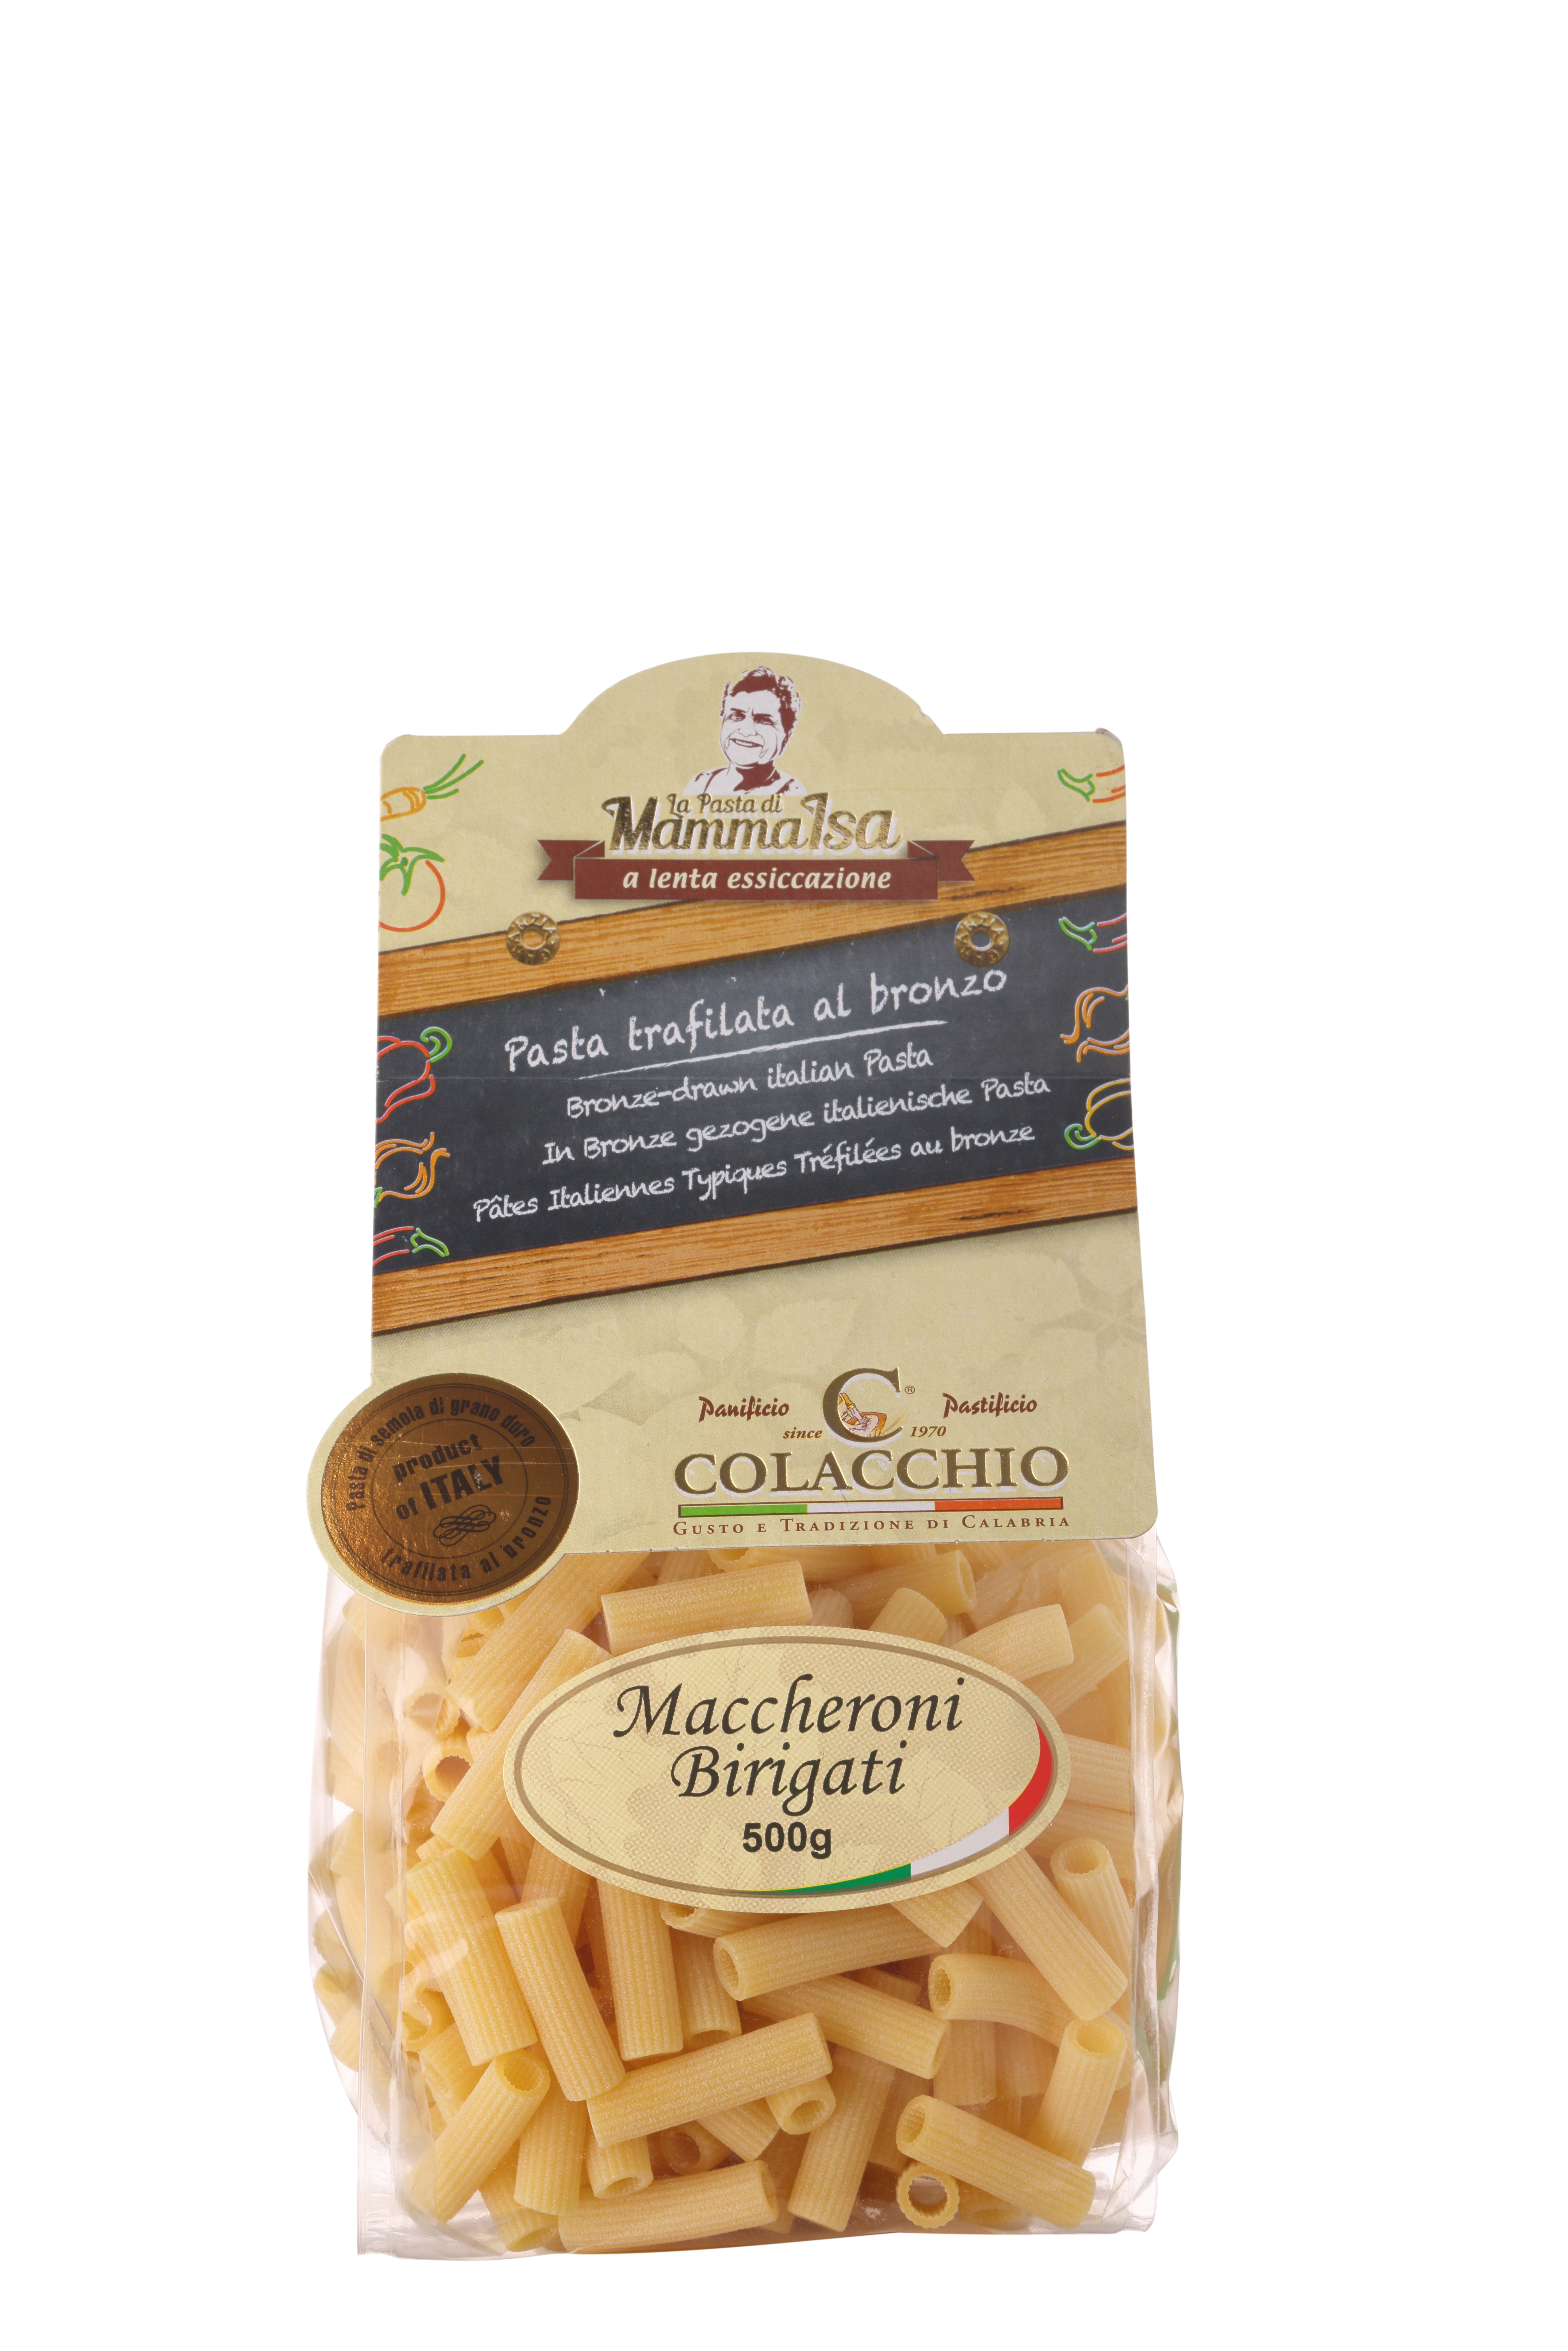 Colacchio "Maccheroni Birigati" Pasta, 500g